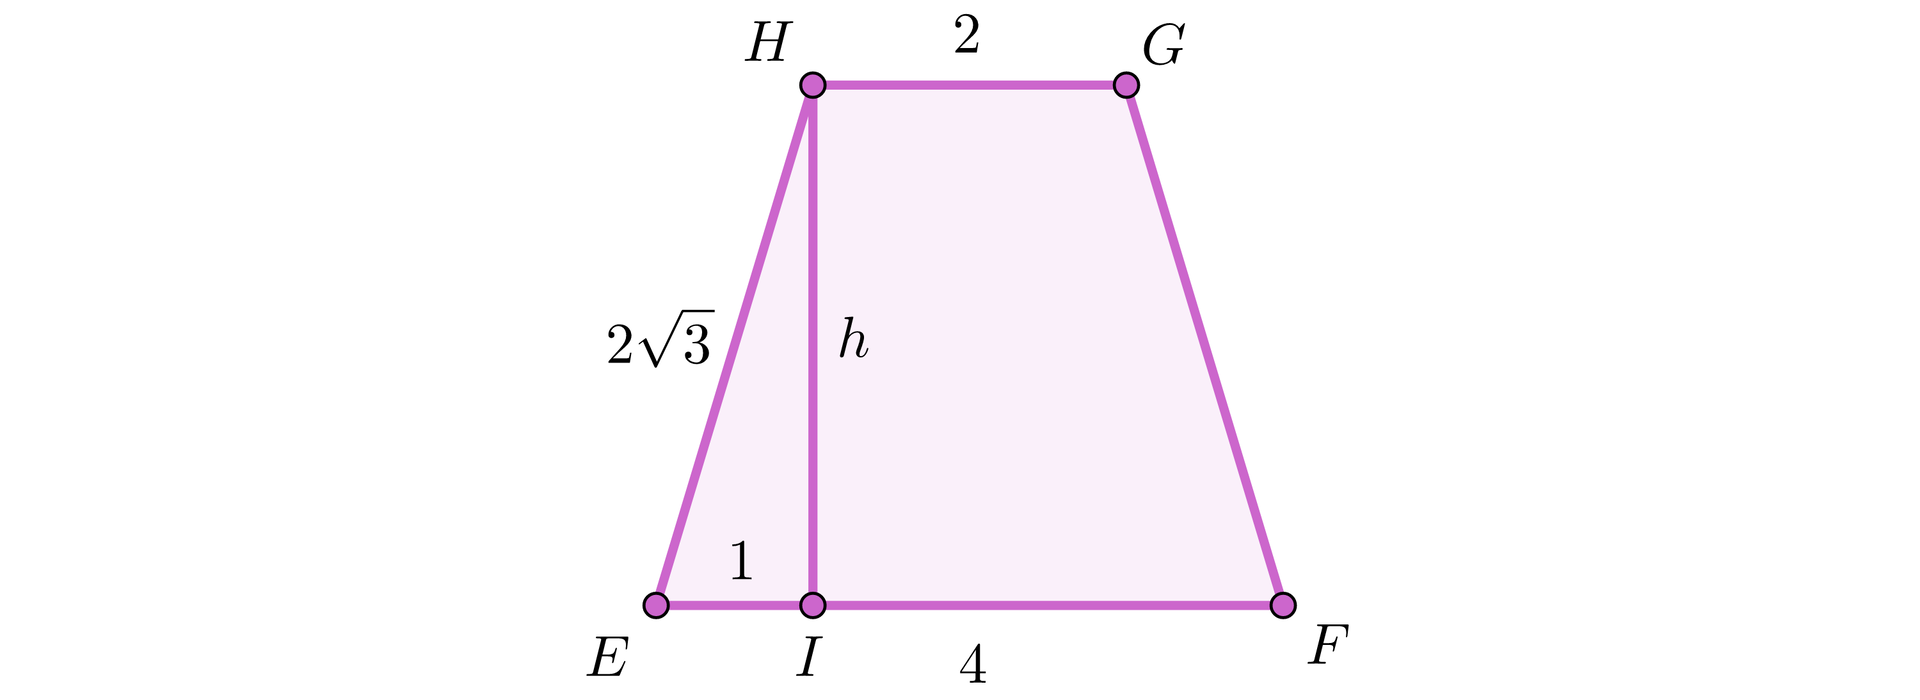 Ilustracja przedstawia trapez E F G H, w którym z wierzchołka H opuszczono wysokość h na bok EF, jej spodek podpisano literą I. Podstawa EF ma długość 4, podstawa GH ma długość dwa. Ramię EH ma długość 23.